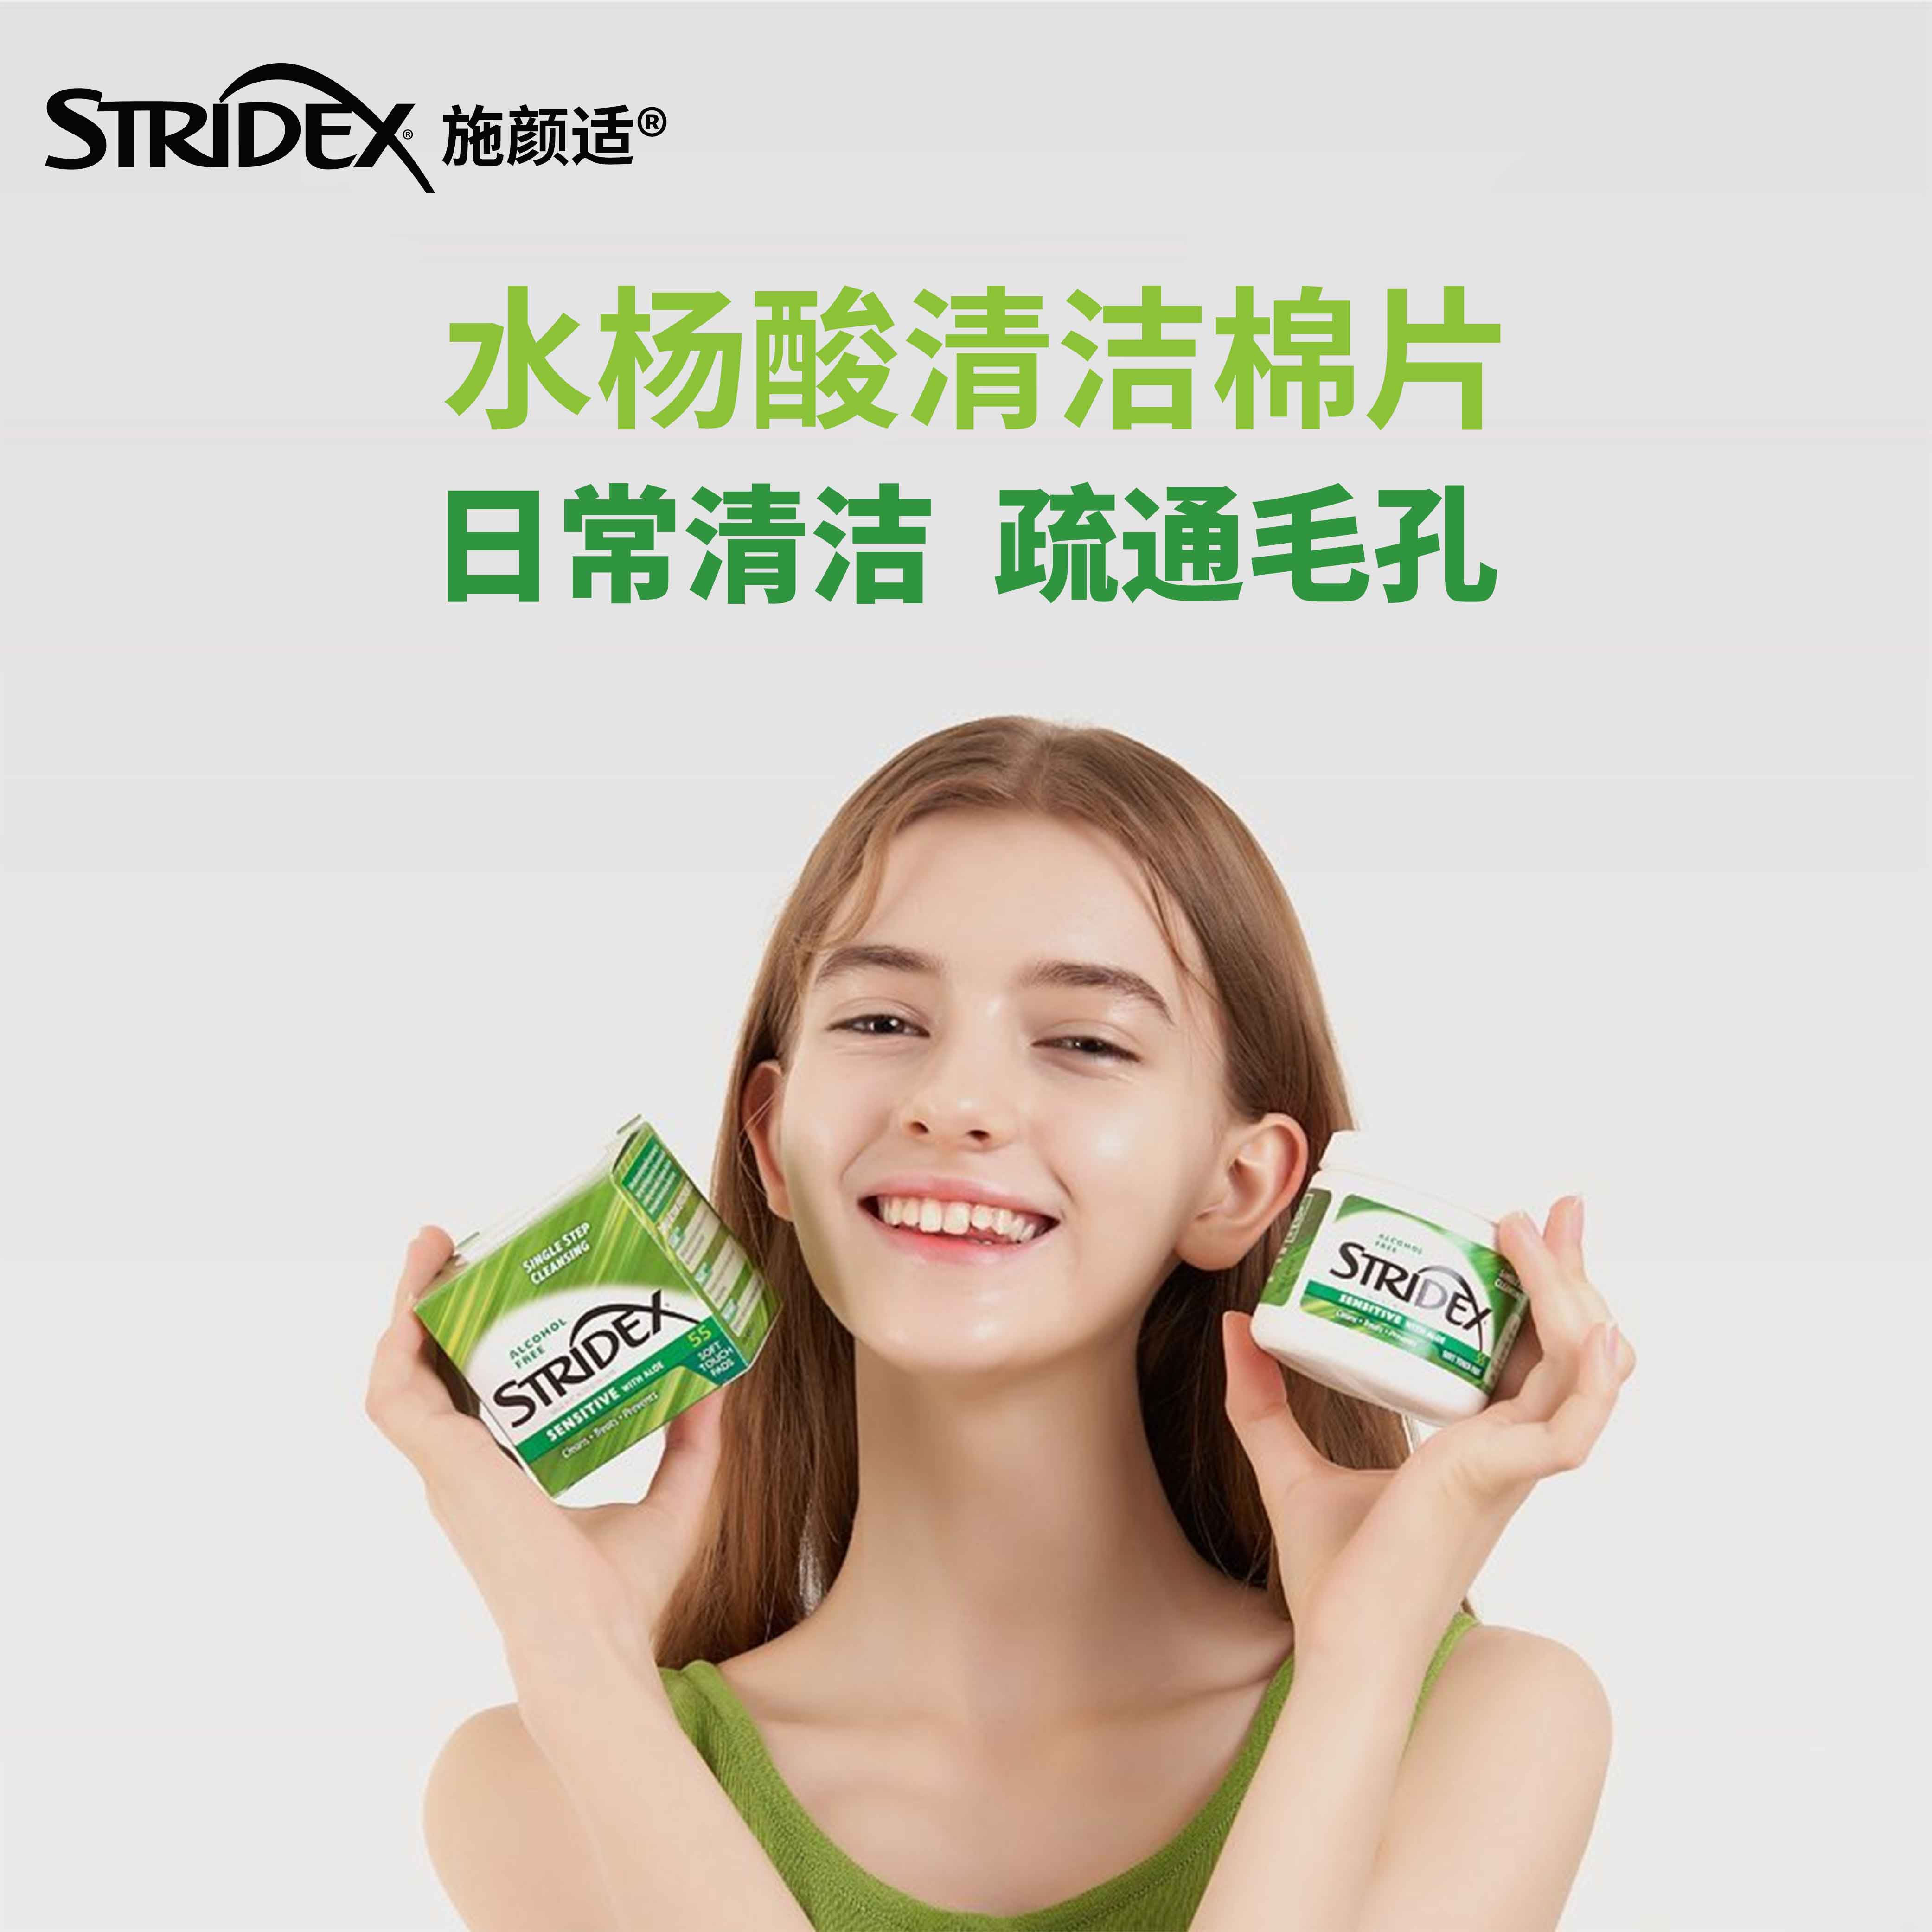 Stridex施颜适水杨酸棉片的正确使用方法